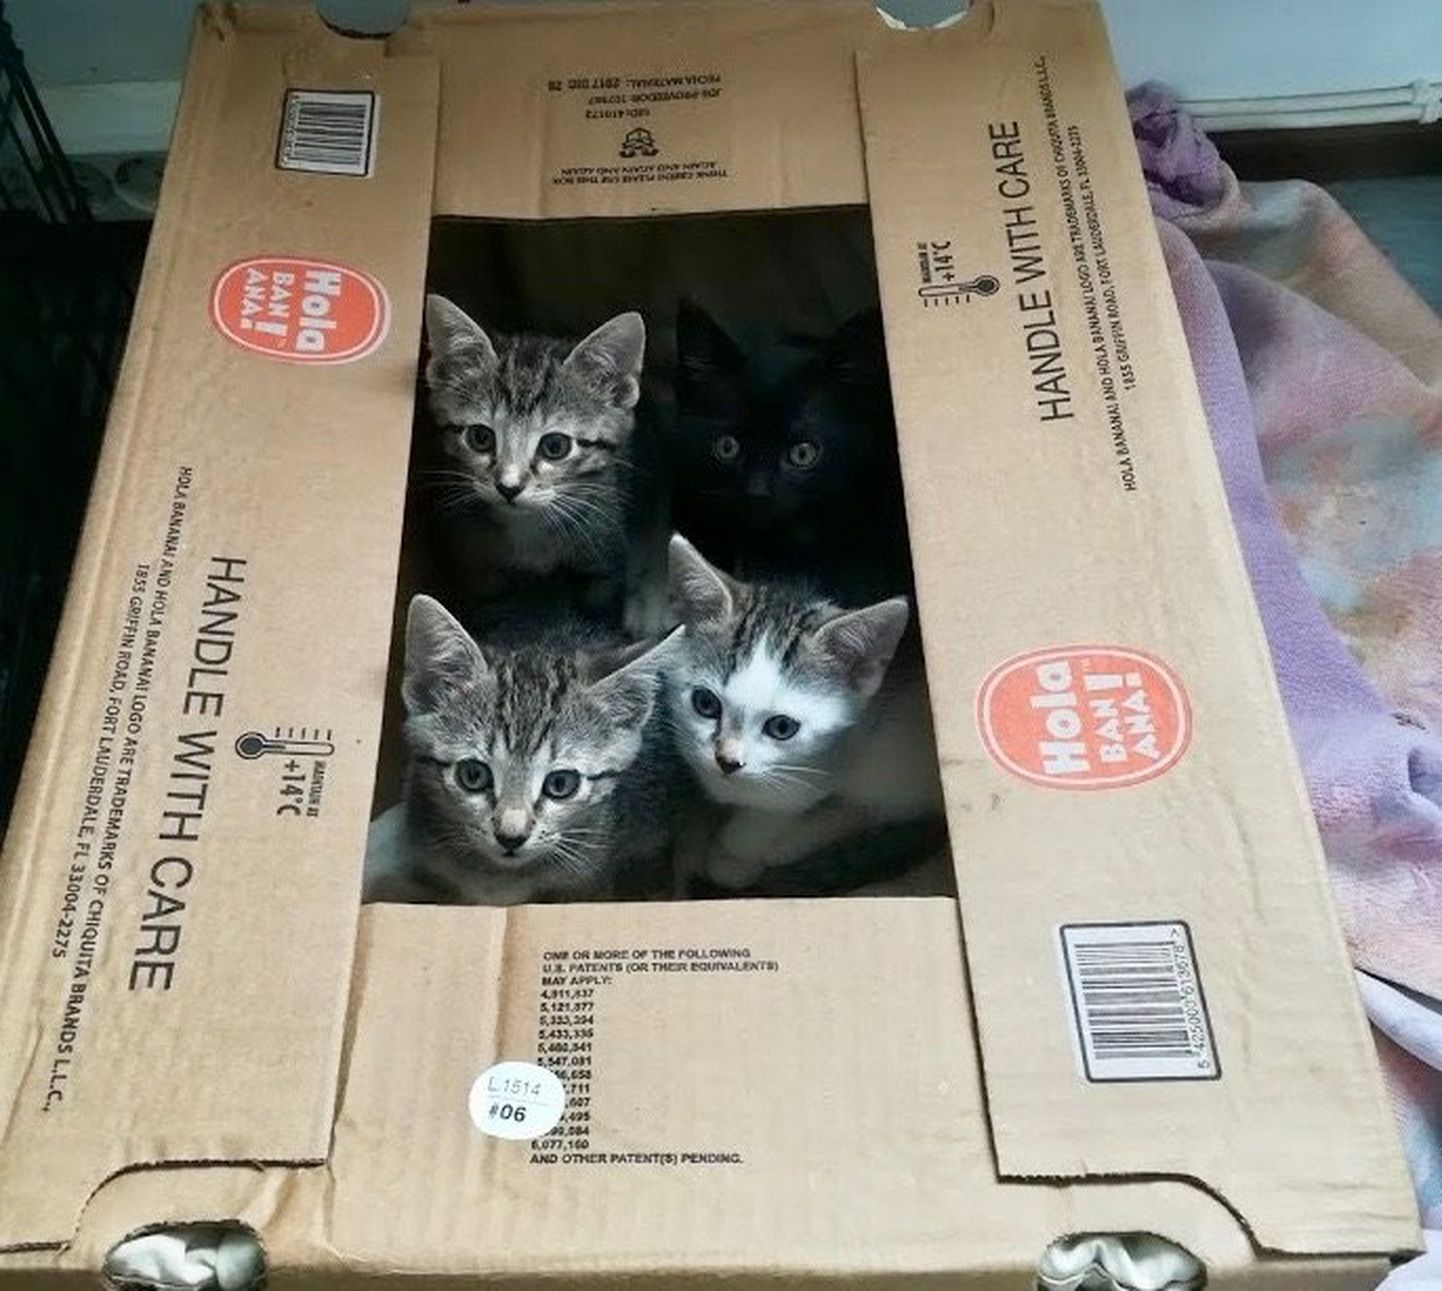 Pärnu loomade varjupaika toodi kast kirjaga "Handle with care", sellest vaatas vastu neli hüljatud kassipoega.